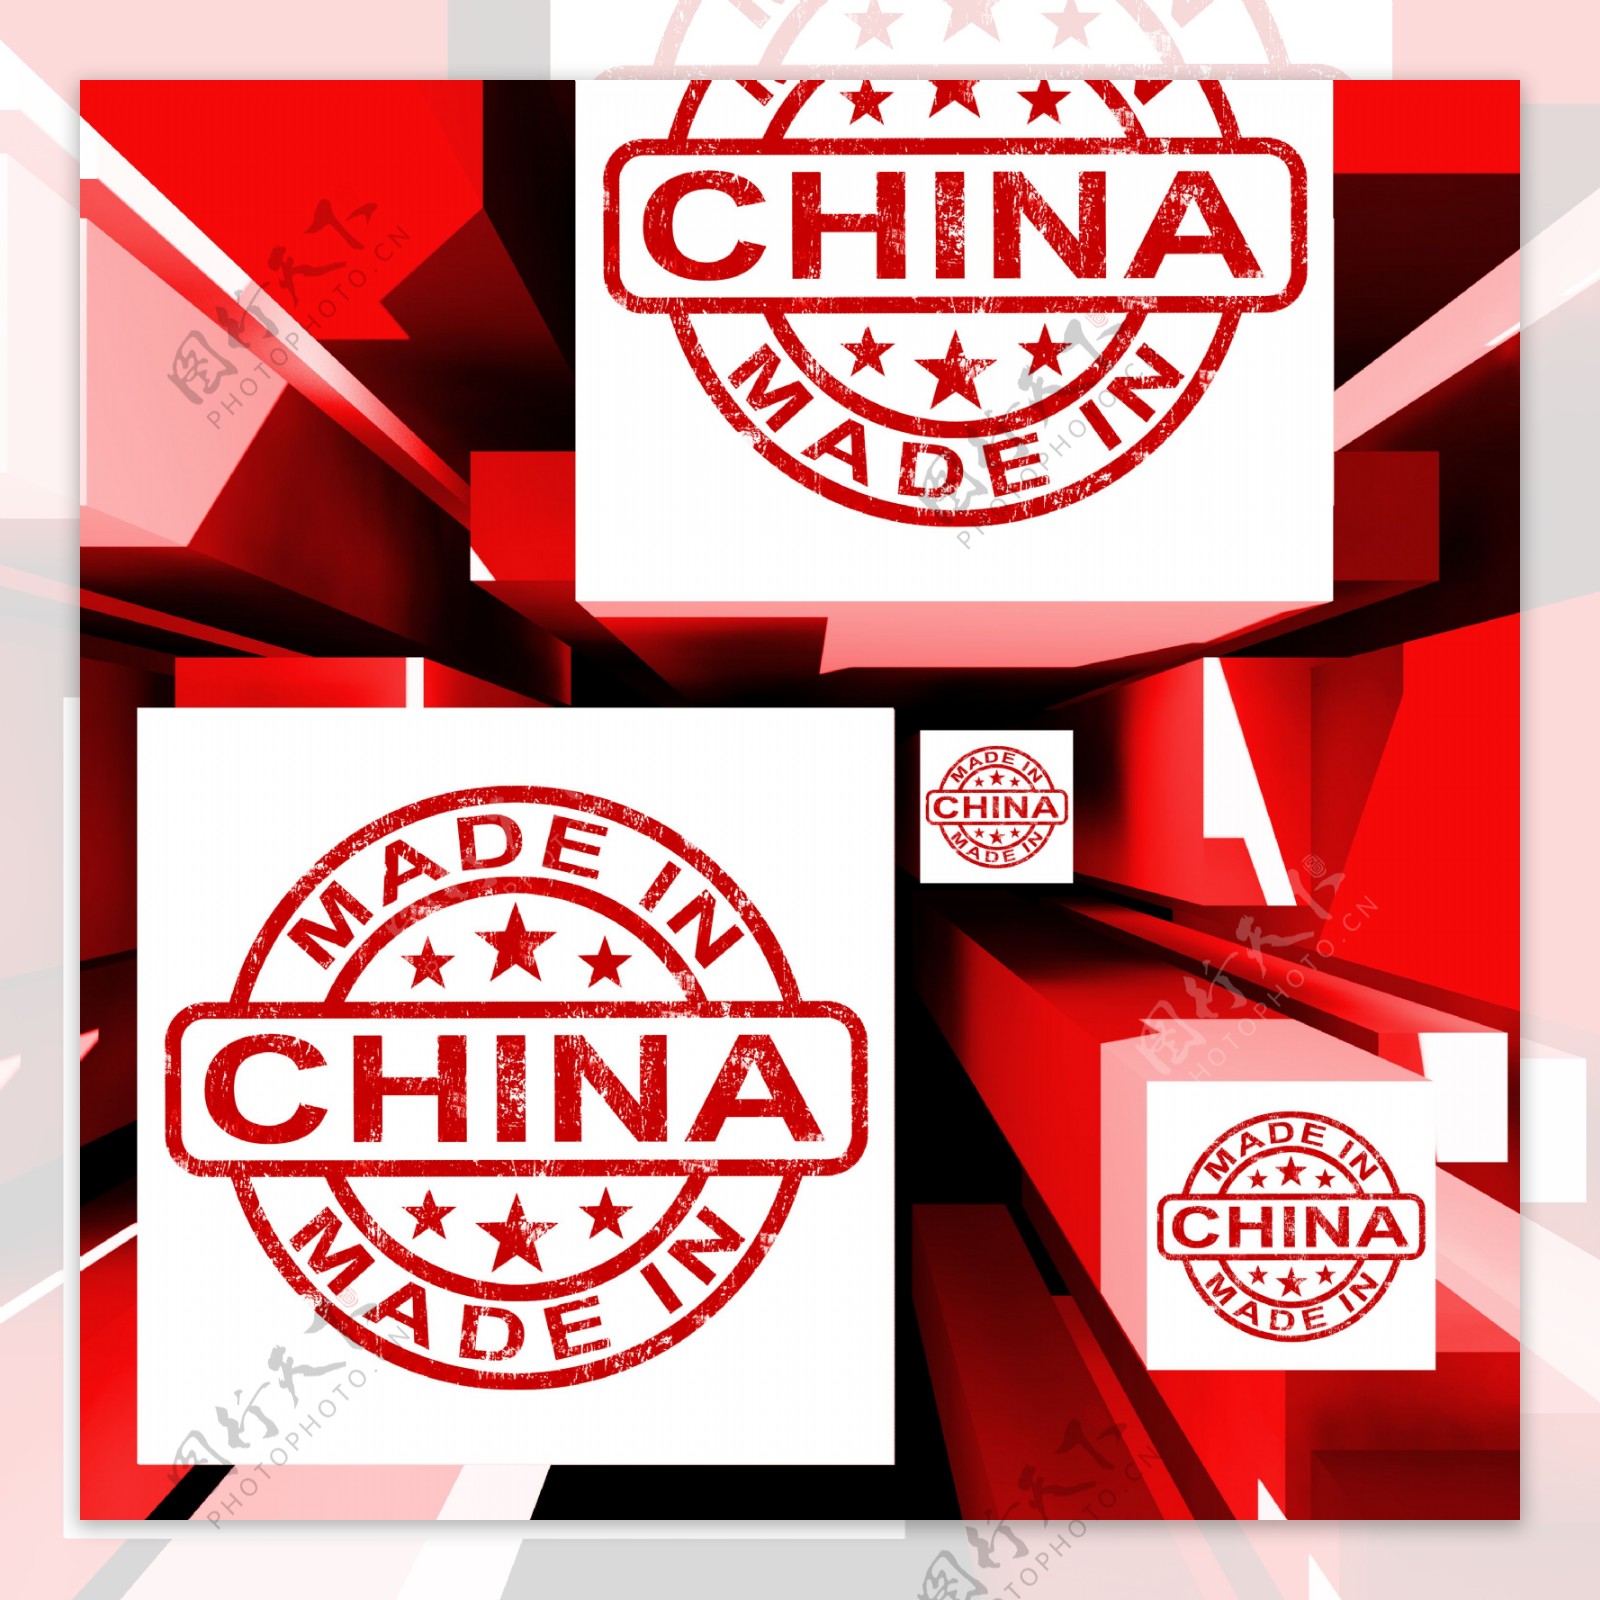 中国制造的立方体展示中国的产品